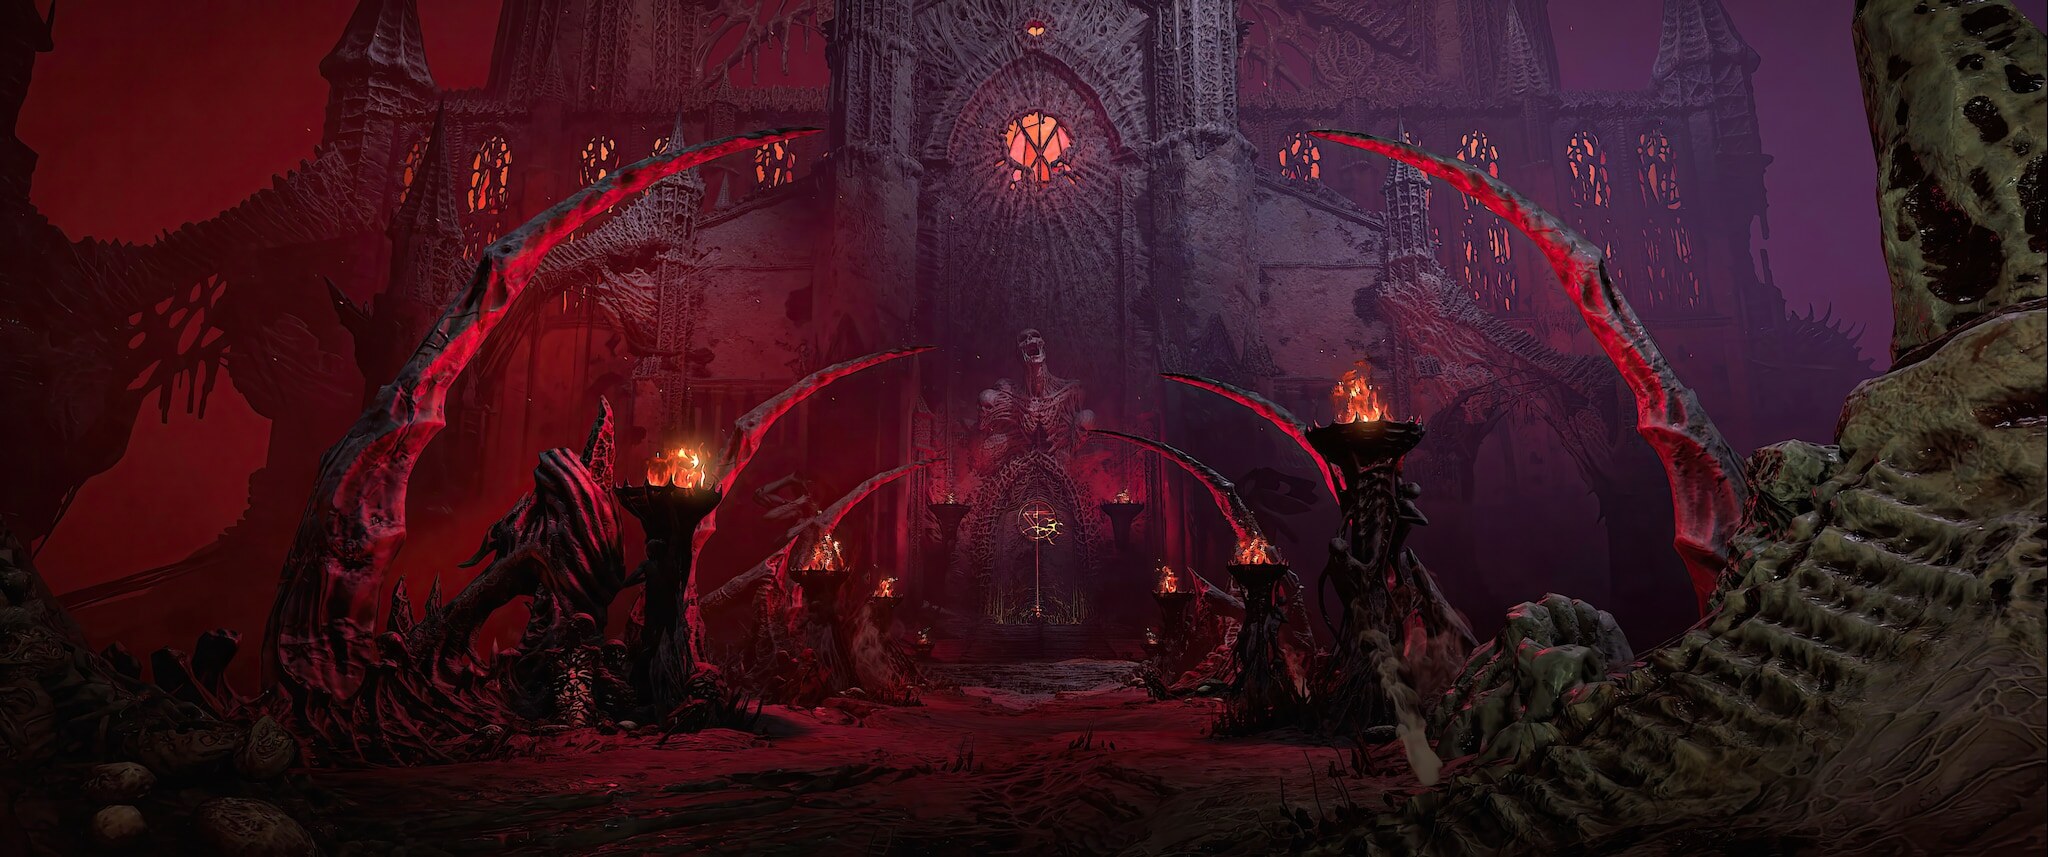 Франшиза Diablo насчитывает более 100 миллионов игроков